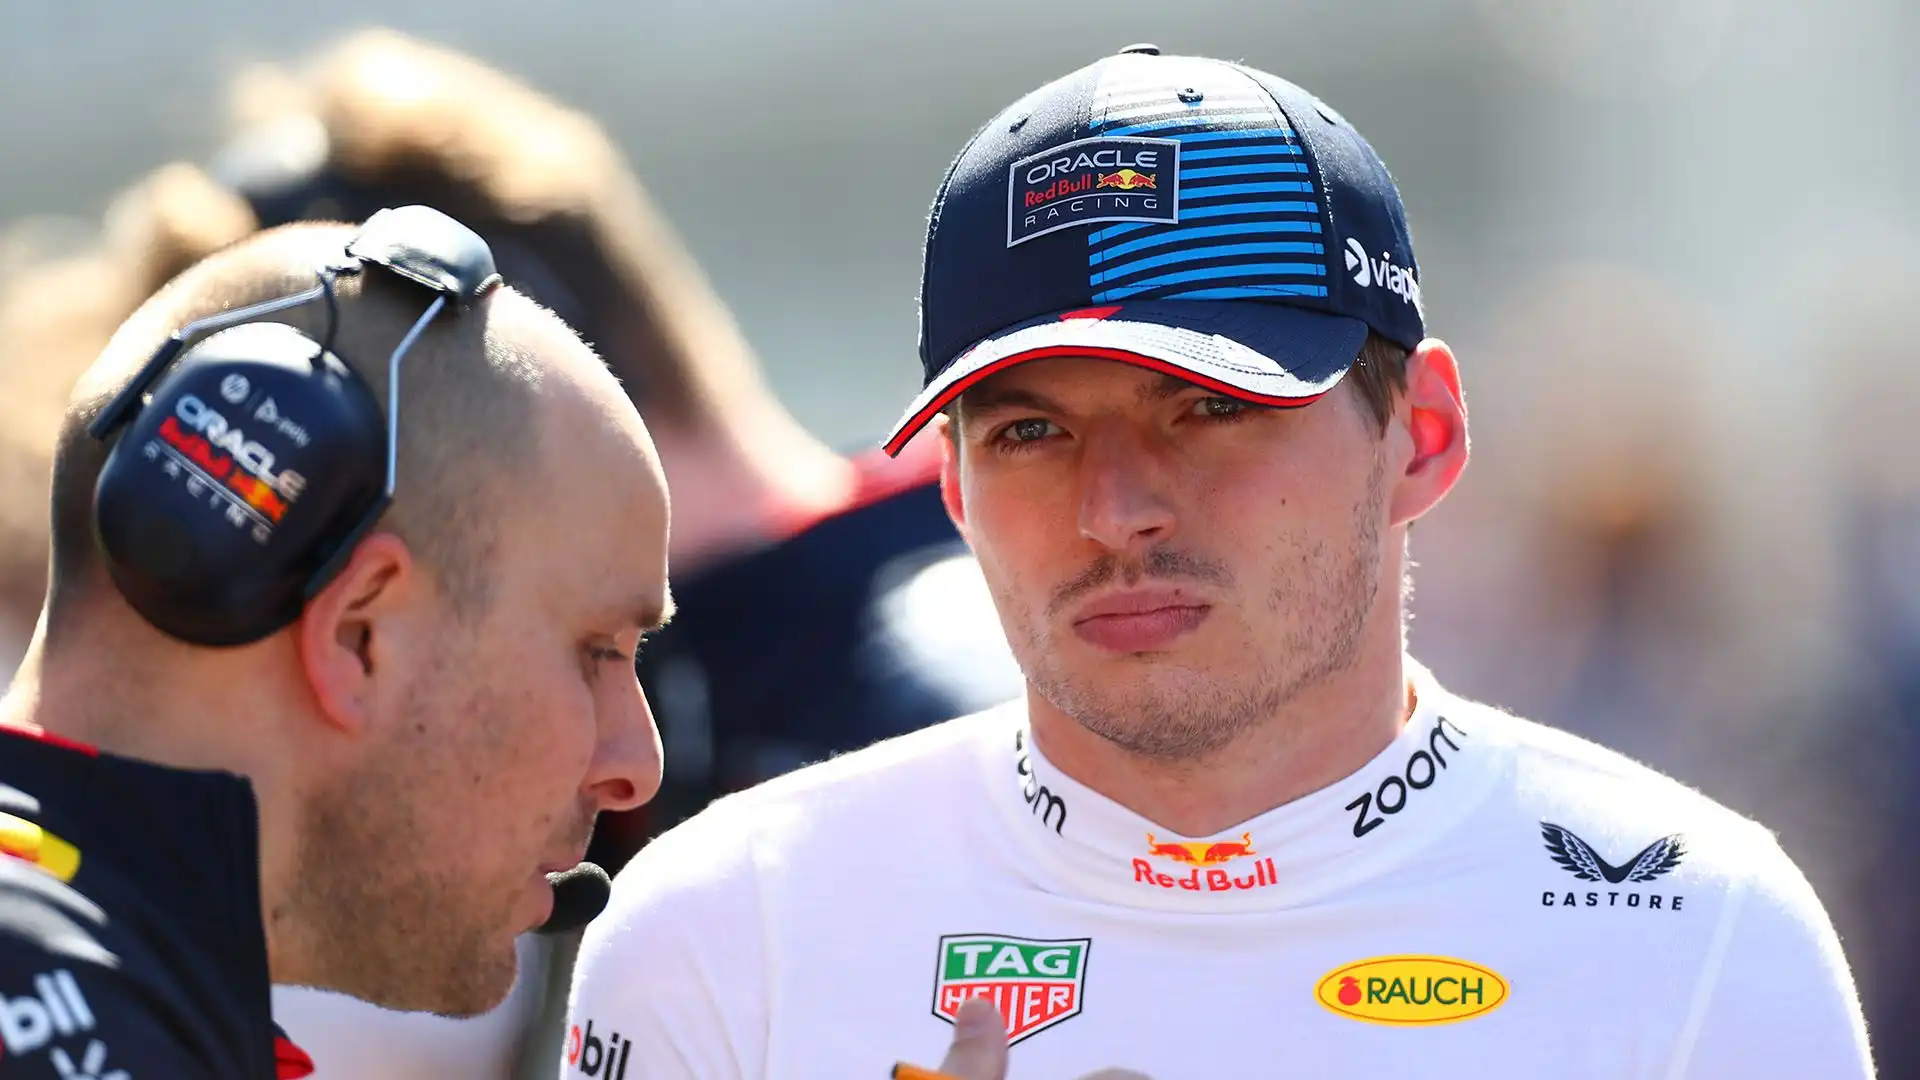 Il pilota campione del mondo è stato costretto a ritirarsi a Melbourne per i problemi ai freni della sua monoposto Red Bull